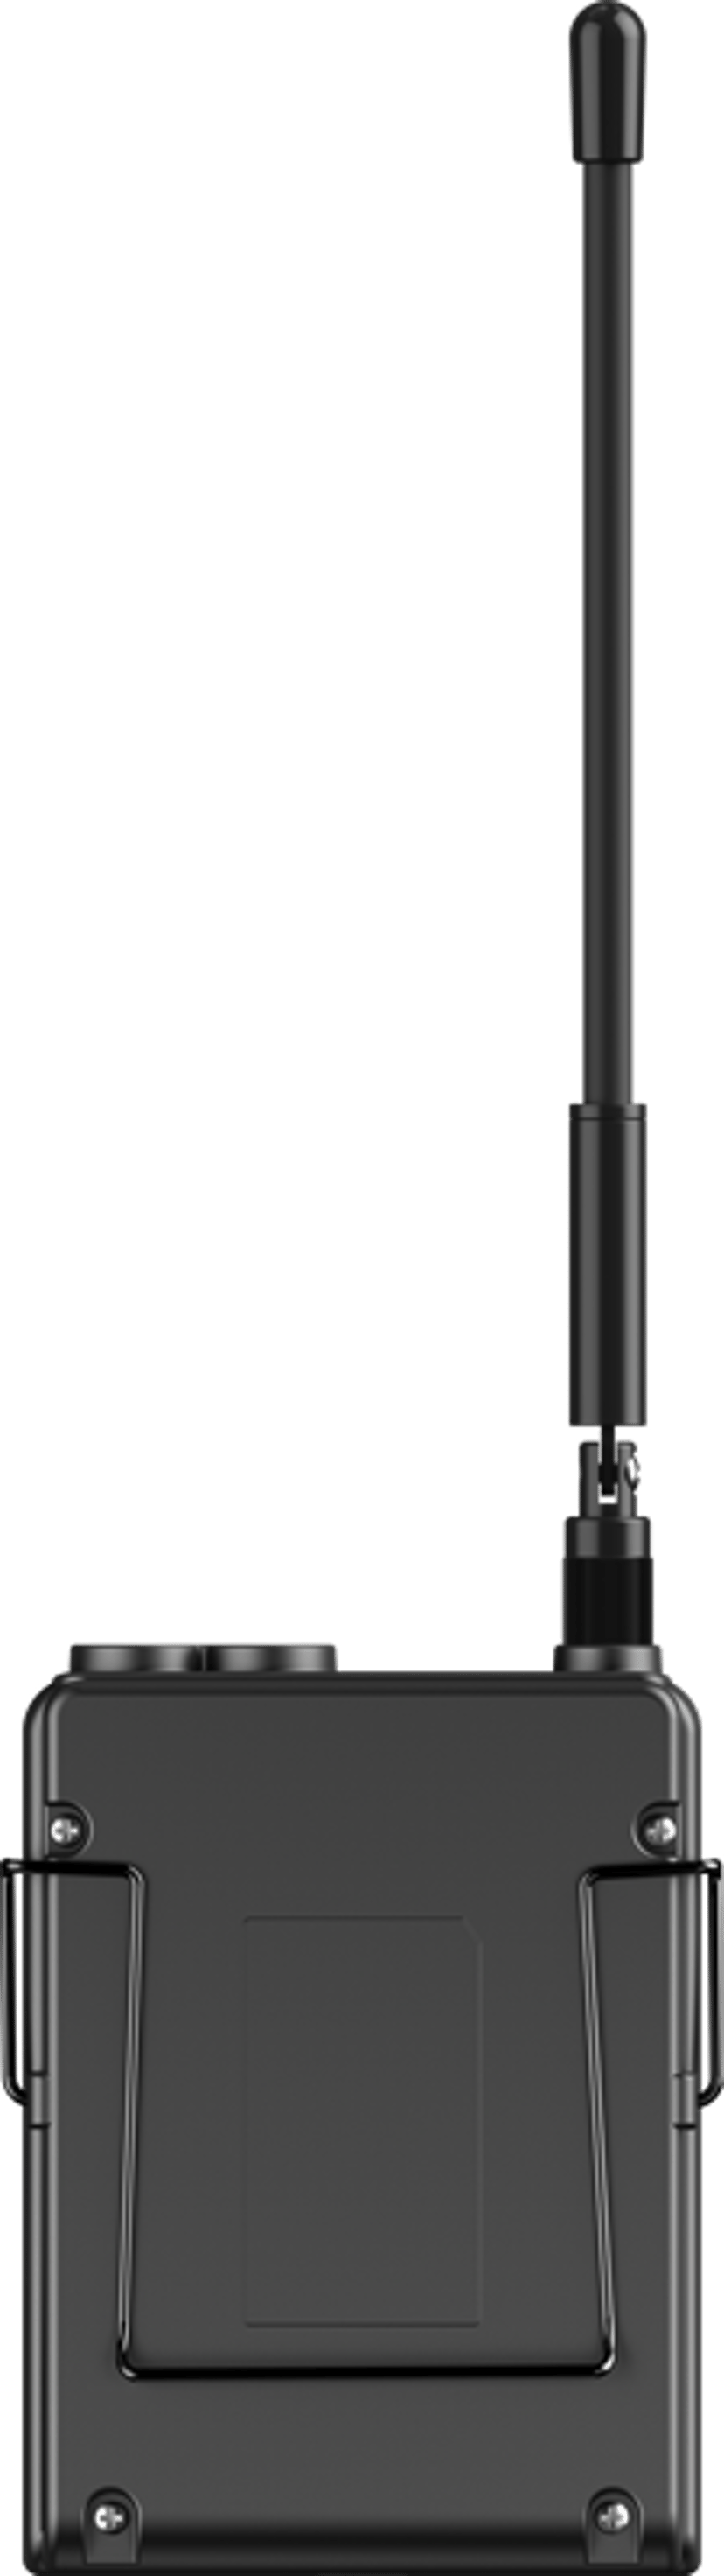 Saramonic UwMic9S Kit 2 (TX+TX+RX)